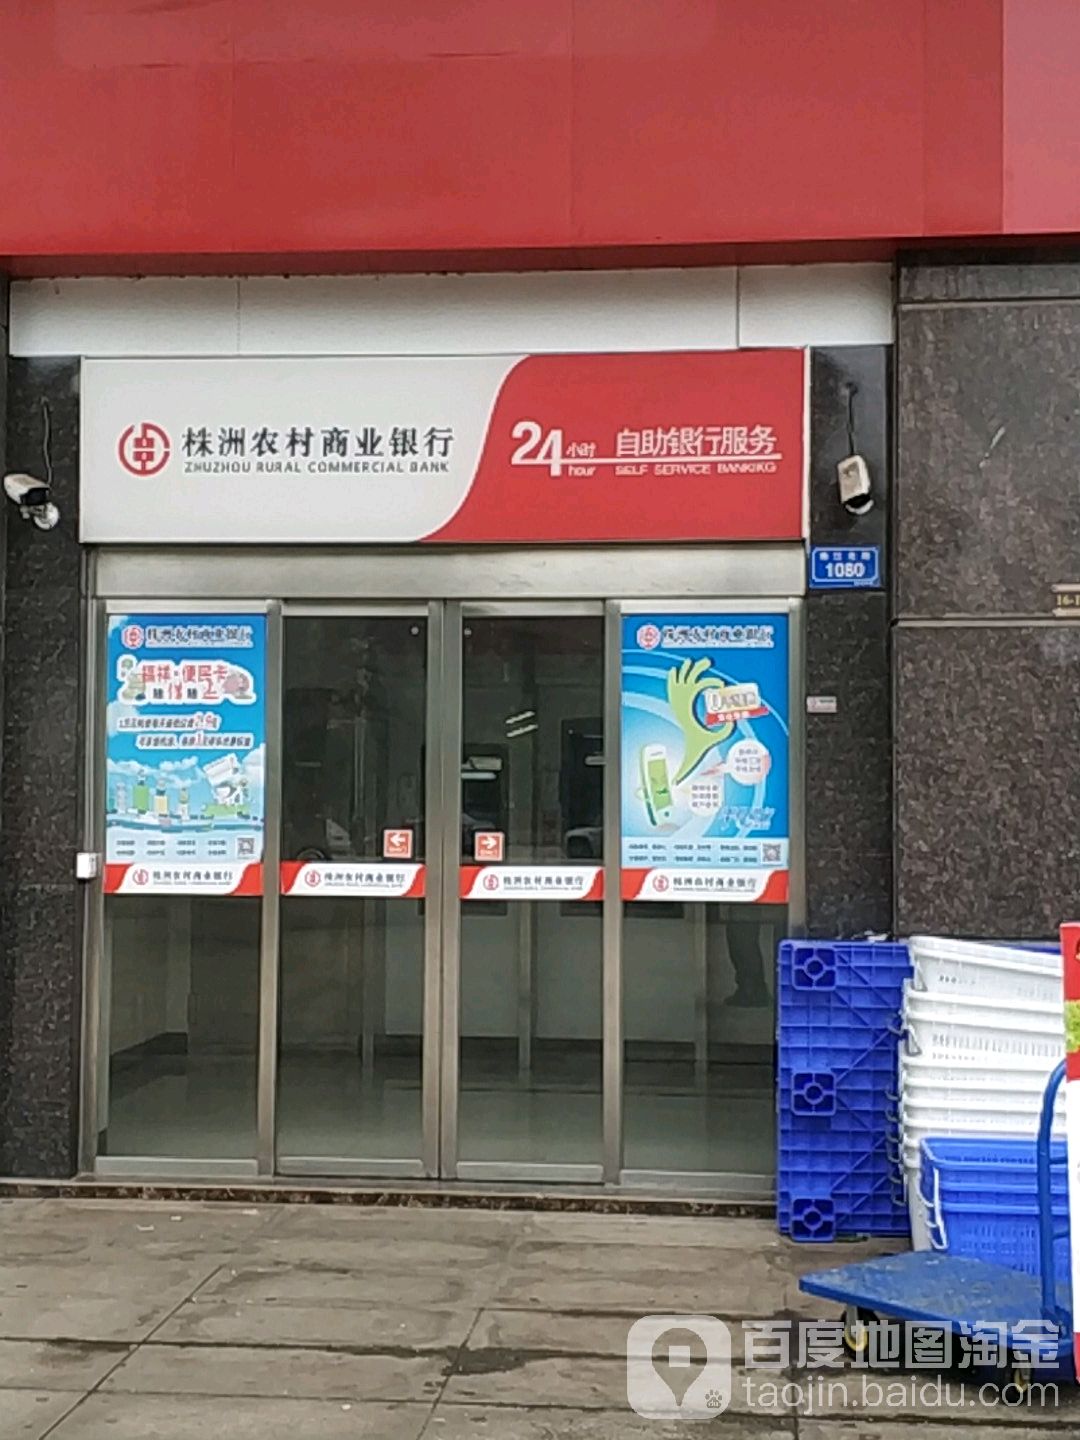 株洲农村商业银行24小时自助银行((珠江北路)